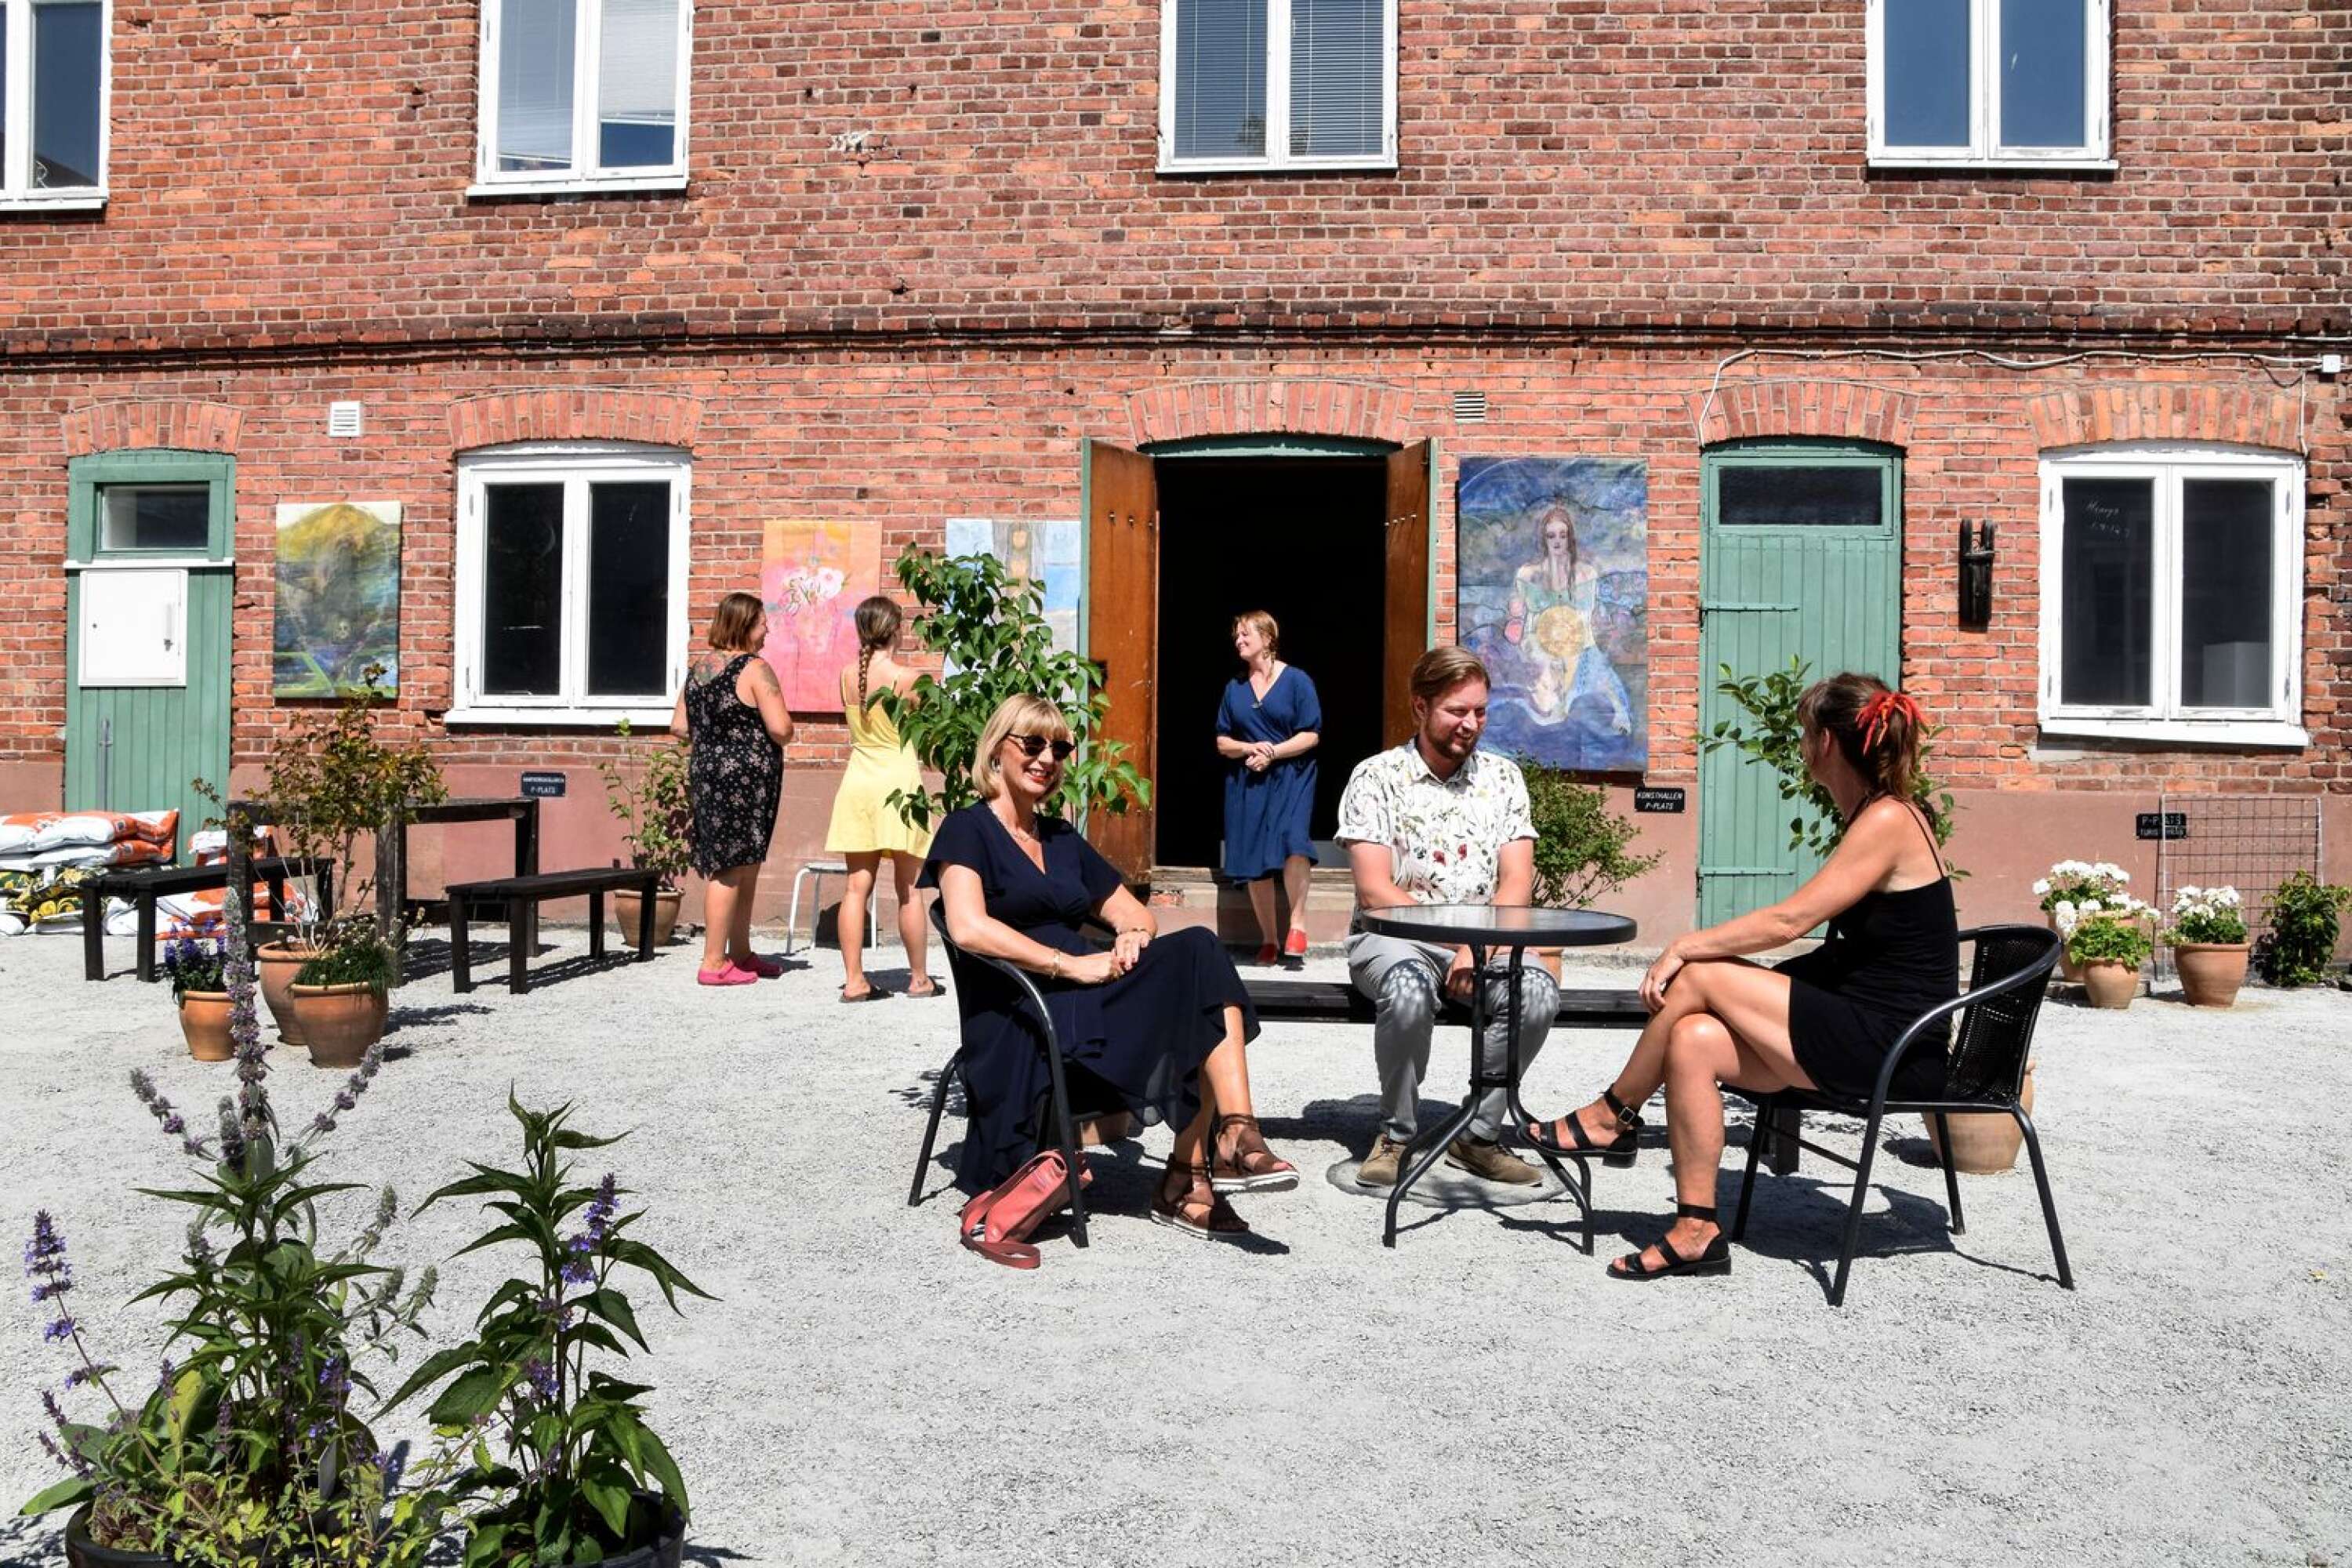 Innergården vid Arvika konsthall fick en uppdatering under sommaren. En satsning på konsthallen, innergården och lokaler kring den, skulle kunna bli ett kulturcentrum - det är en av inriktningarna när konstföreningen diskuterar framtidsalternativ.